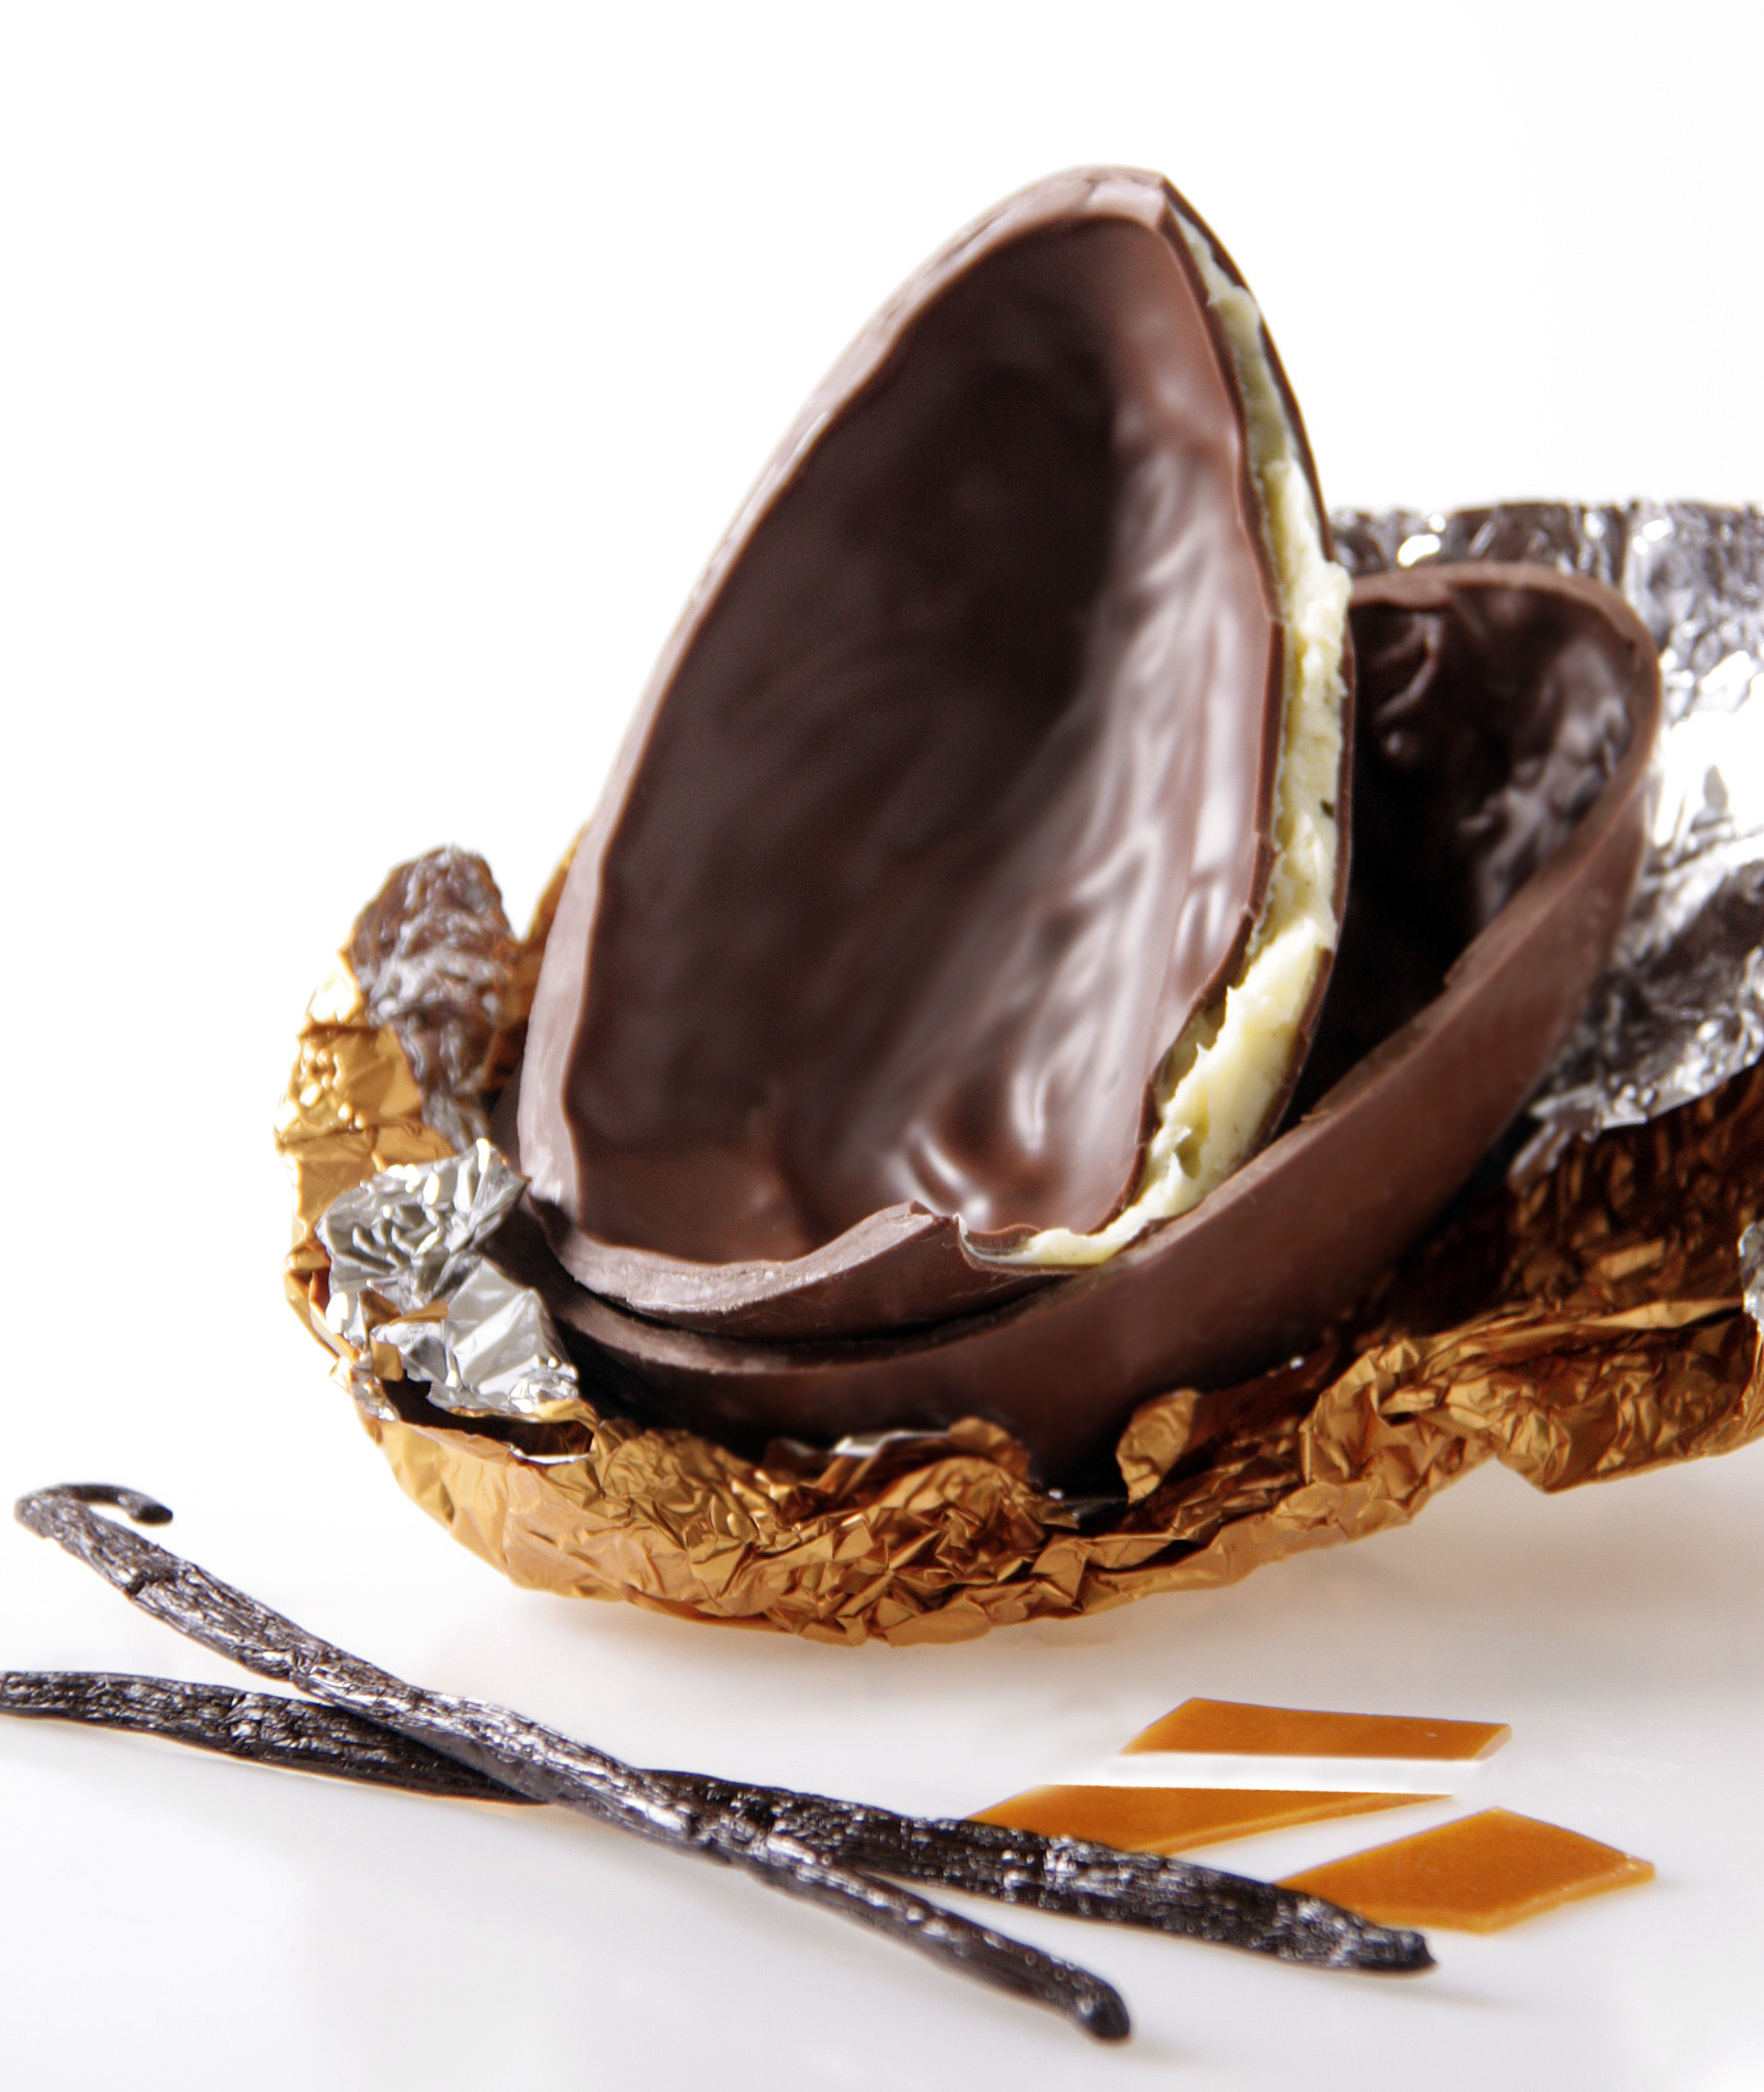 A Cuore di Cacao trouxe para esta Páscoa várias combinações inusitadas, mas não esqueceu o clássico ovo de créme brulee.